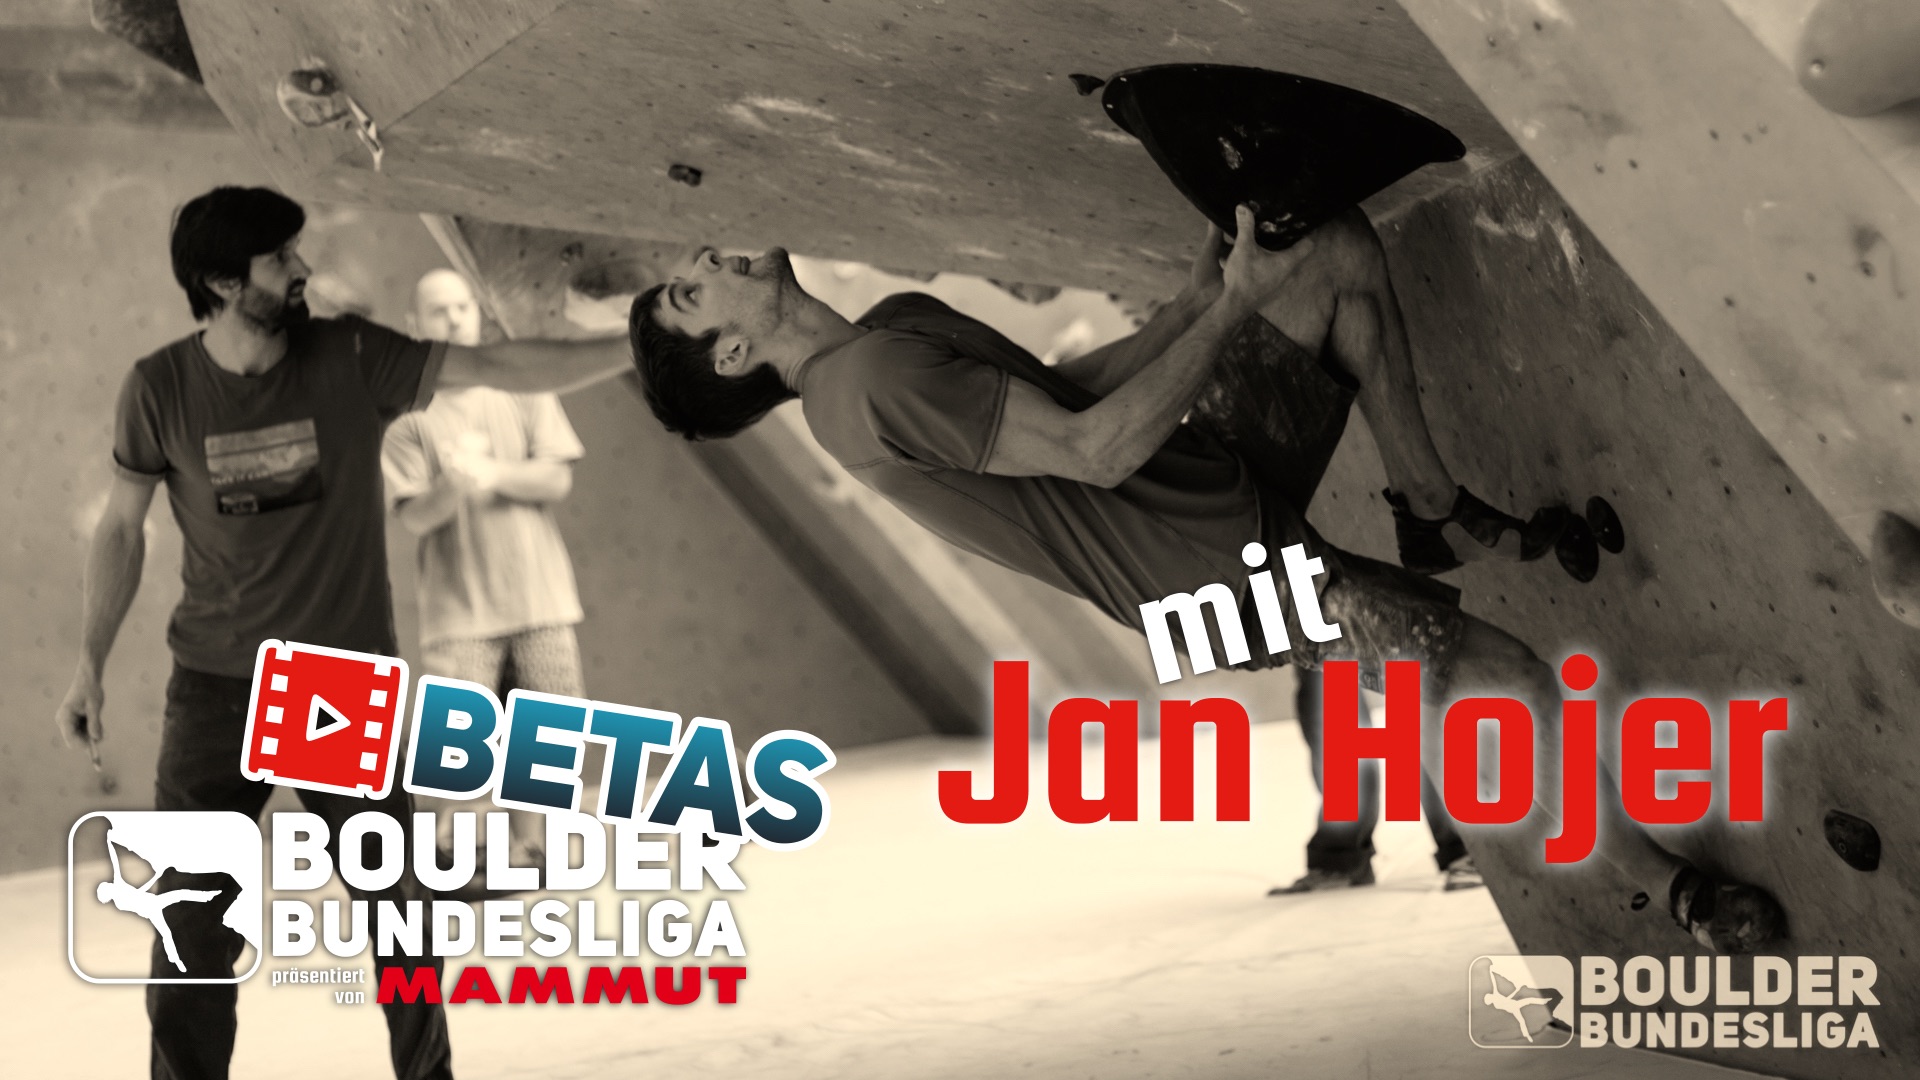 Boulder Betas mit Jan Hojer